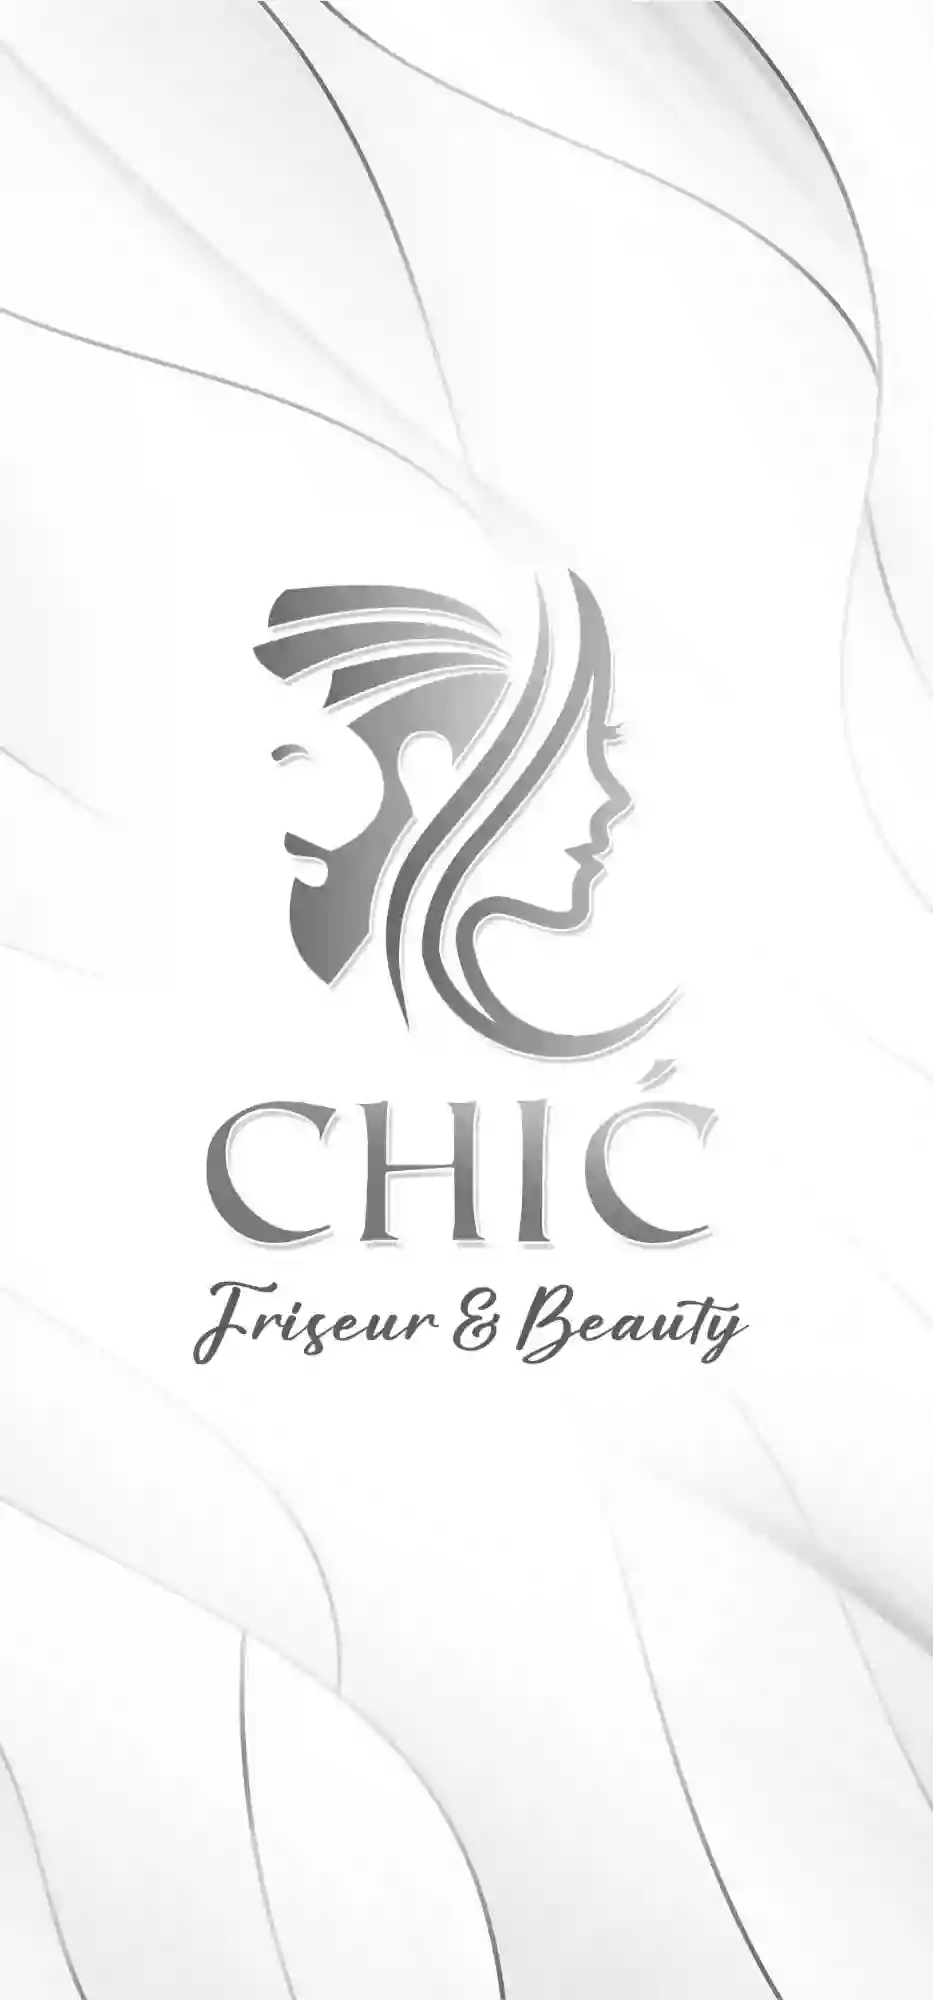 Chic Friseur & Beauty